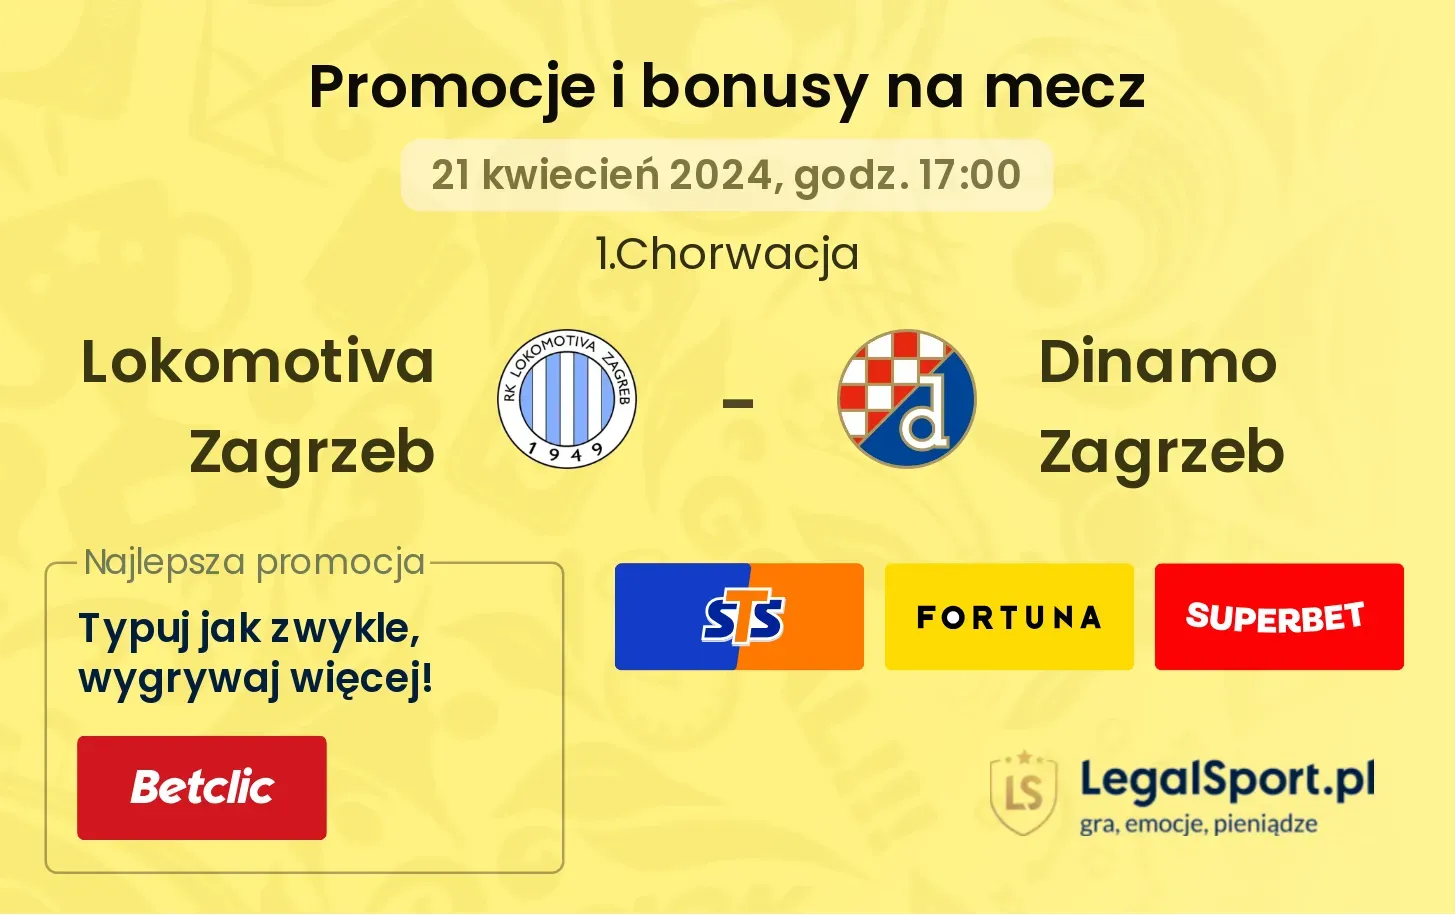 Lokomotiva Zagrzeb - Dinamo Zagrzeb promocje bonusy na mecz